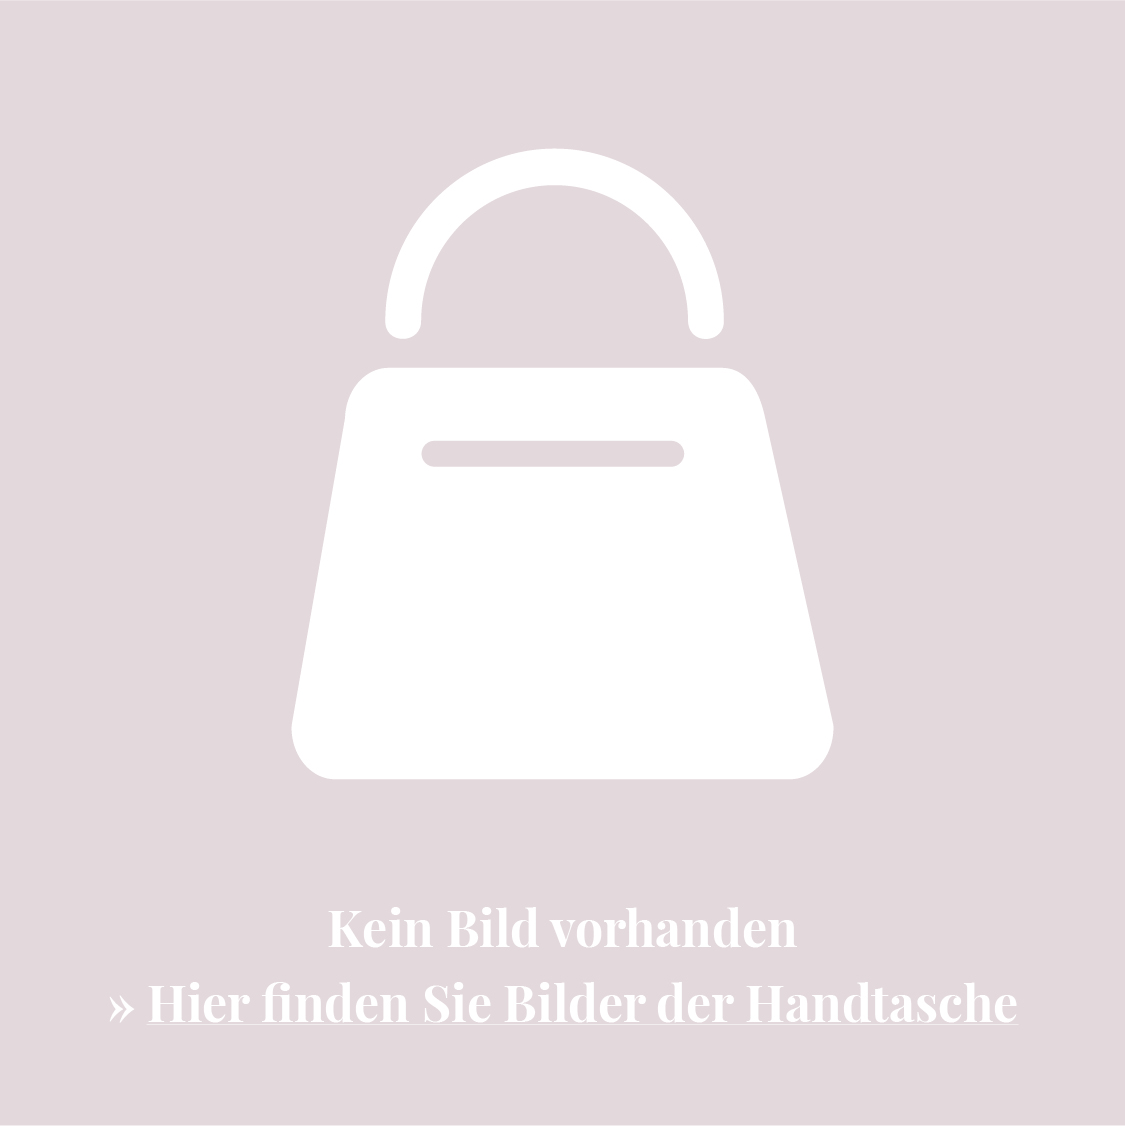 Jil Sander Handtasche mit Logo-Print - Schwarz von Jil Sander